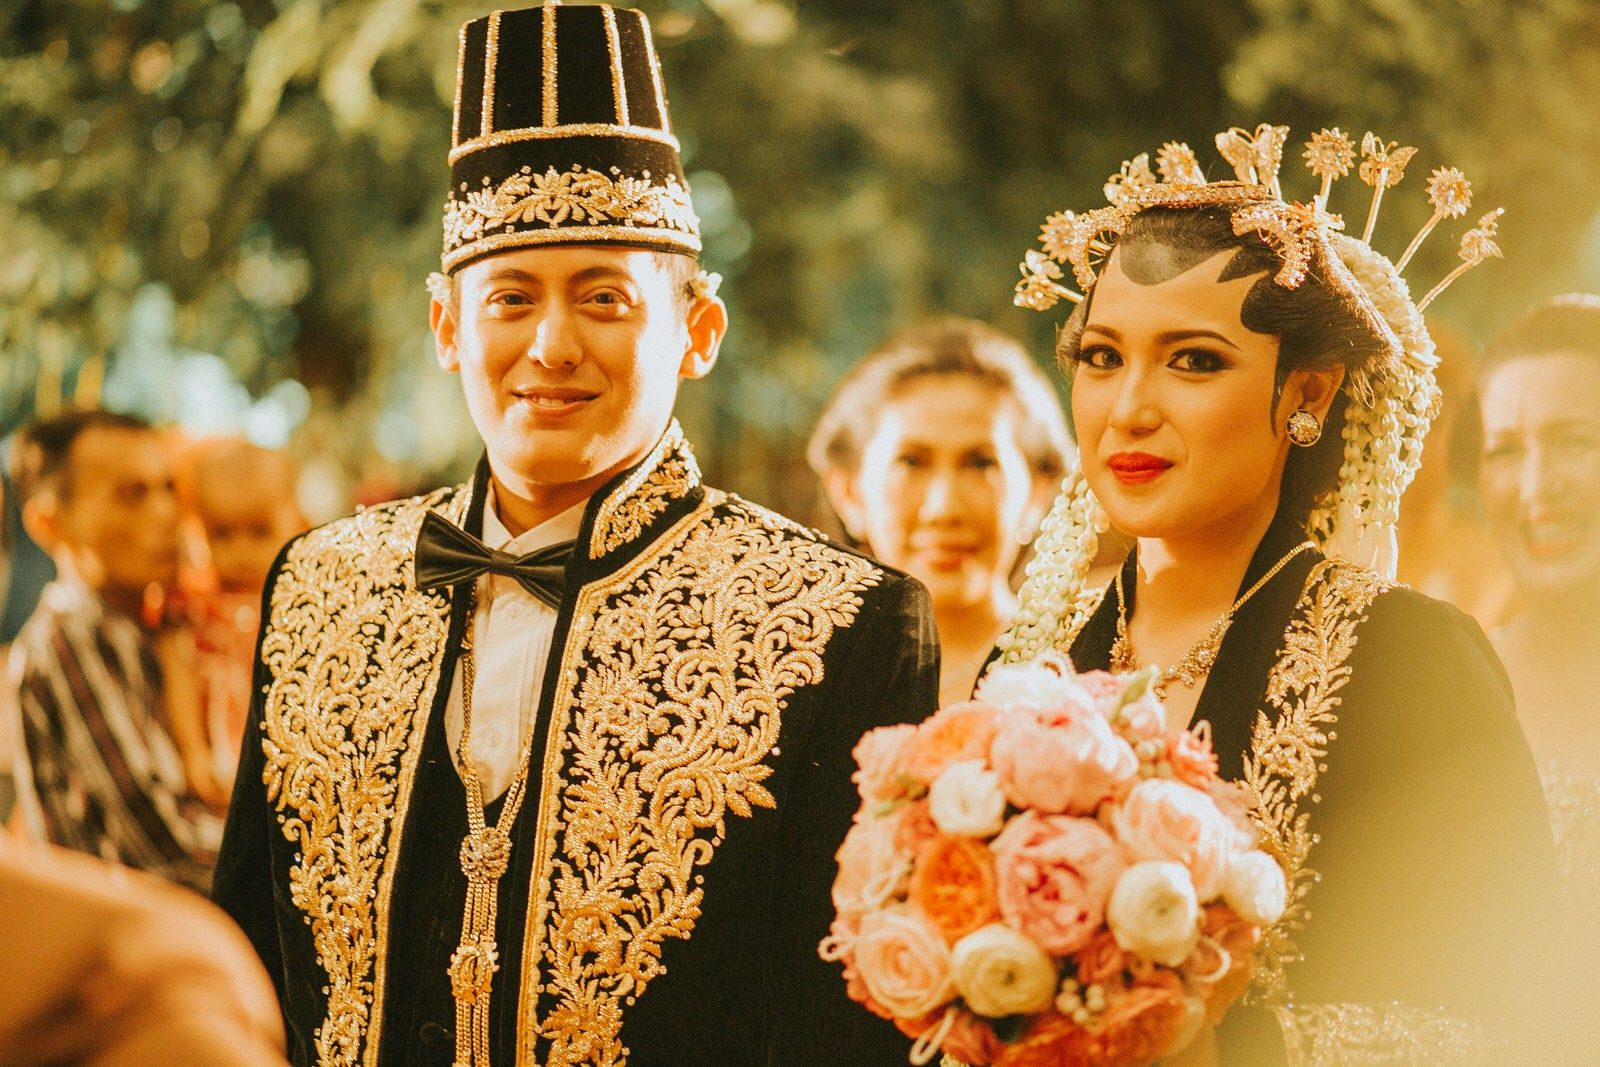 Foto Pernikahan Adat Jawa